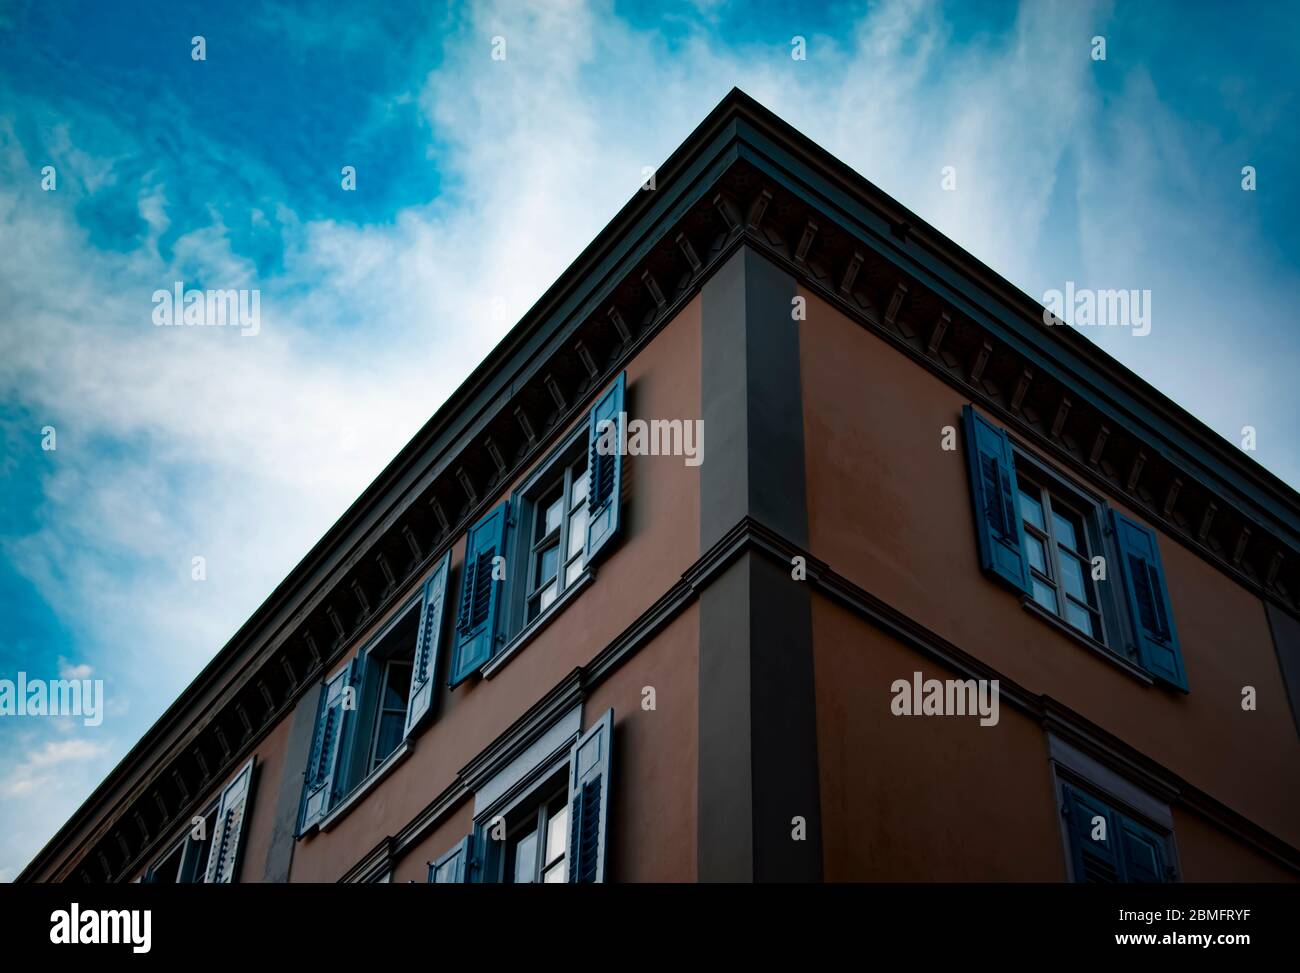 Un edificio dall'architettura svizzera. L'edificio è stato fotografato contro il cielo come sfondo, evidenziando il motivo geometrico. Foto Stock